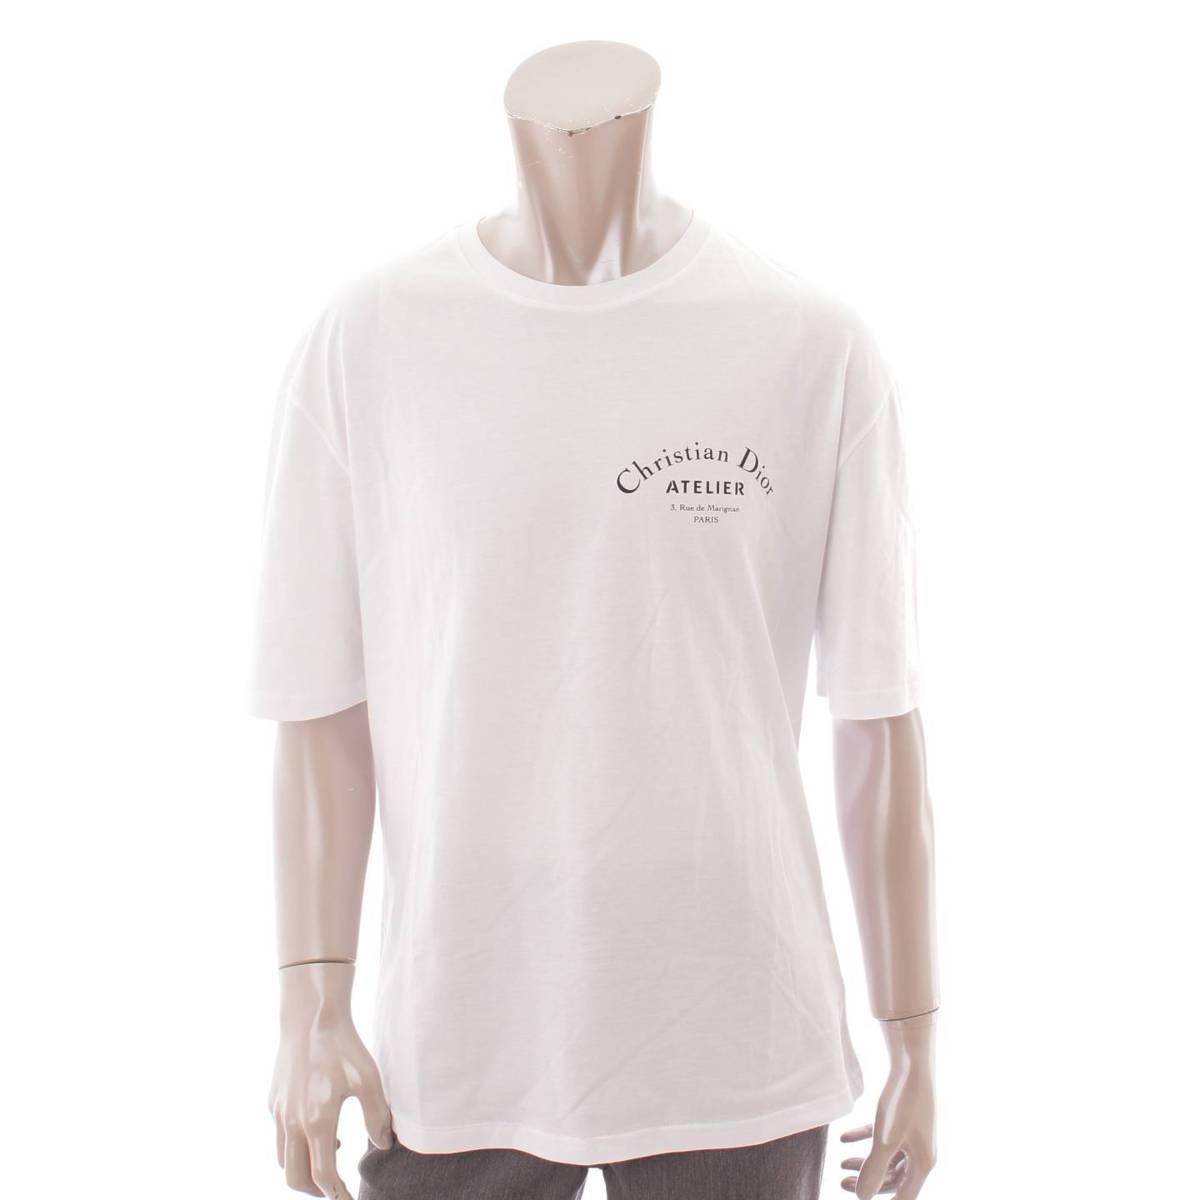 ディオールオム(Dior Homme) メンズ アトリエ ロゴ プリント Tシャツ トップス 863J621I2712 ホワイト M